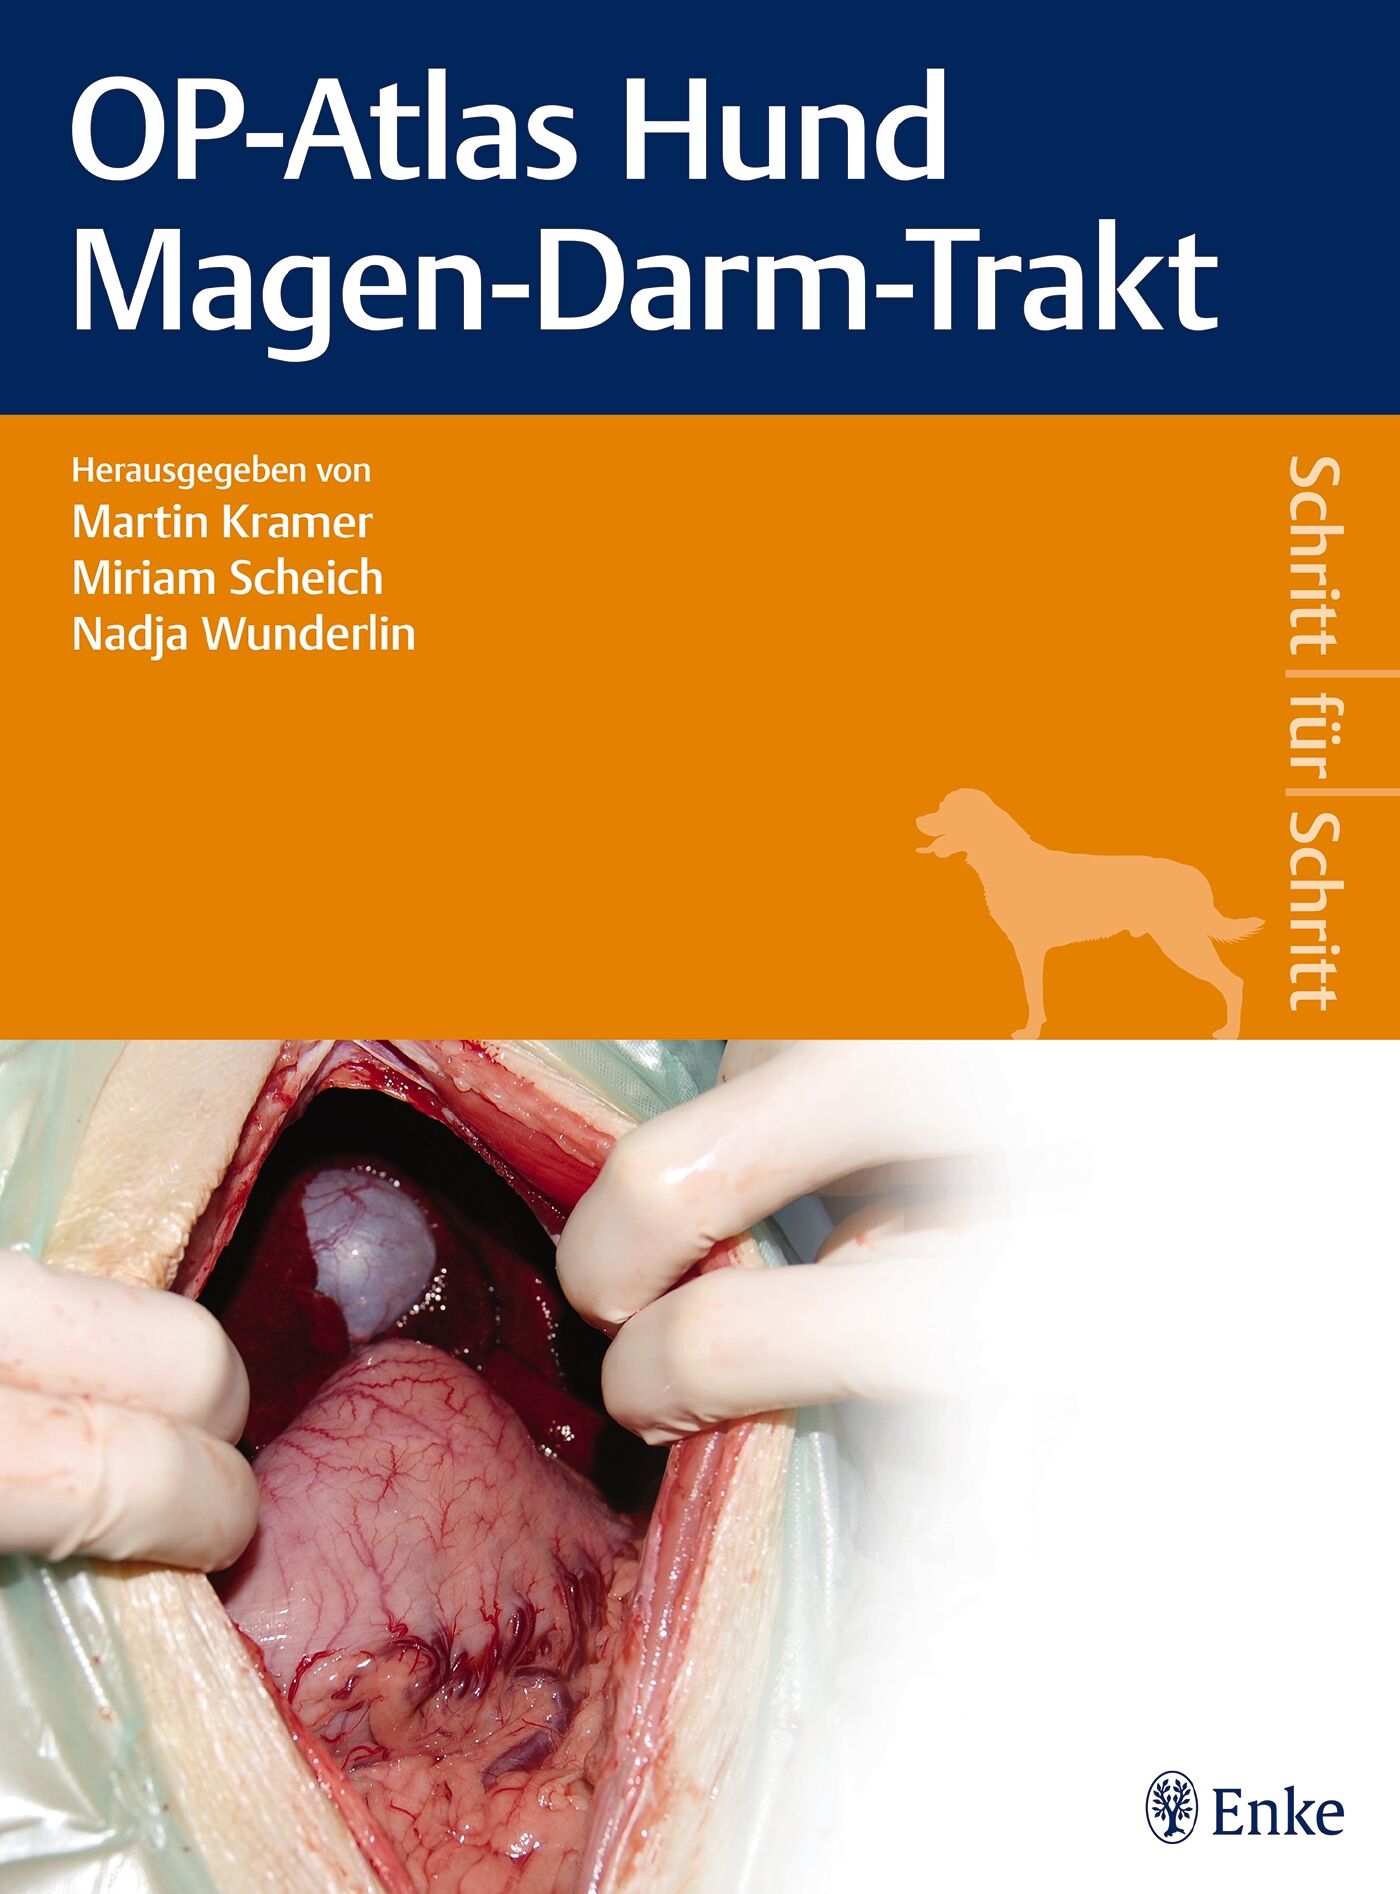 OP-Atlas Hund Magen-Darm-Trakt, 9783132400412